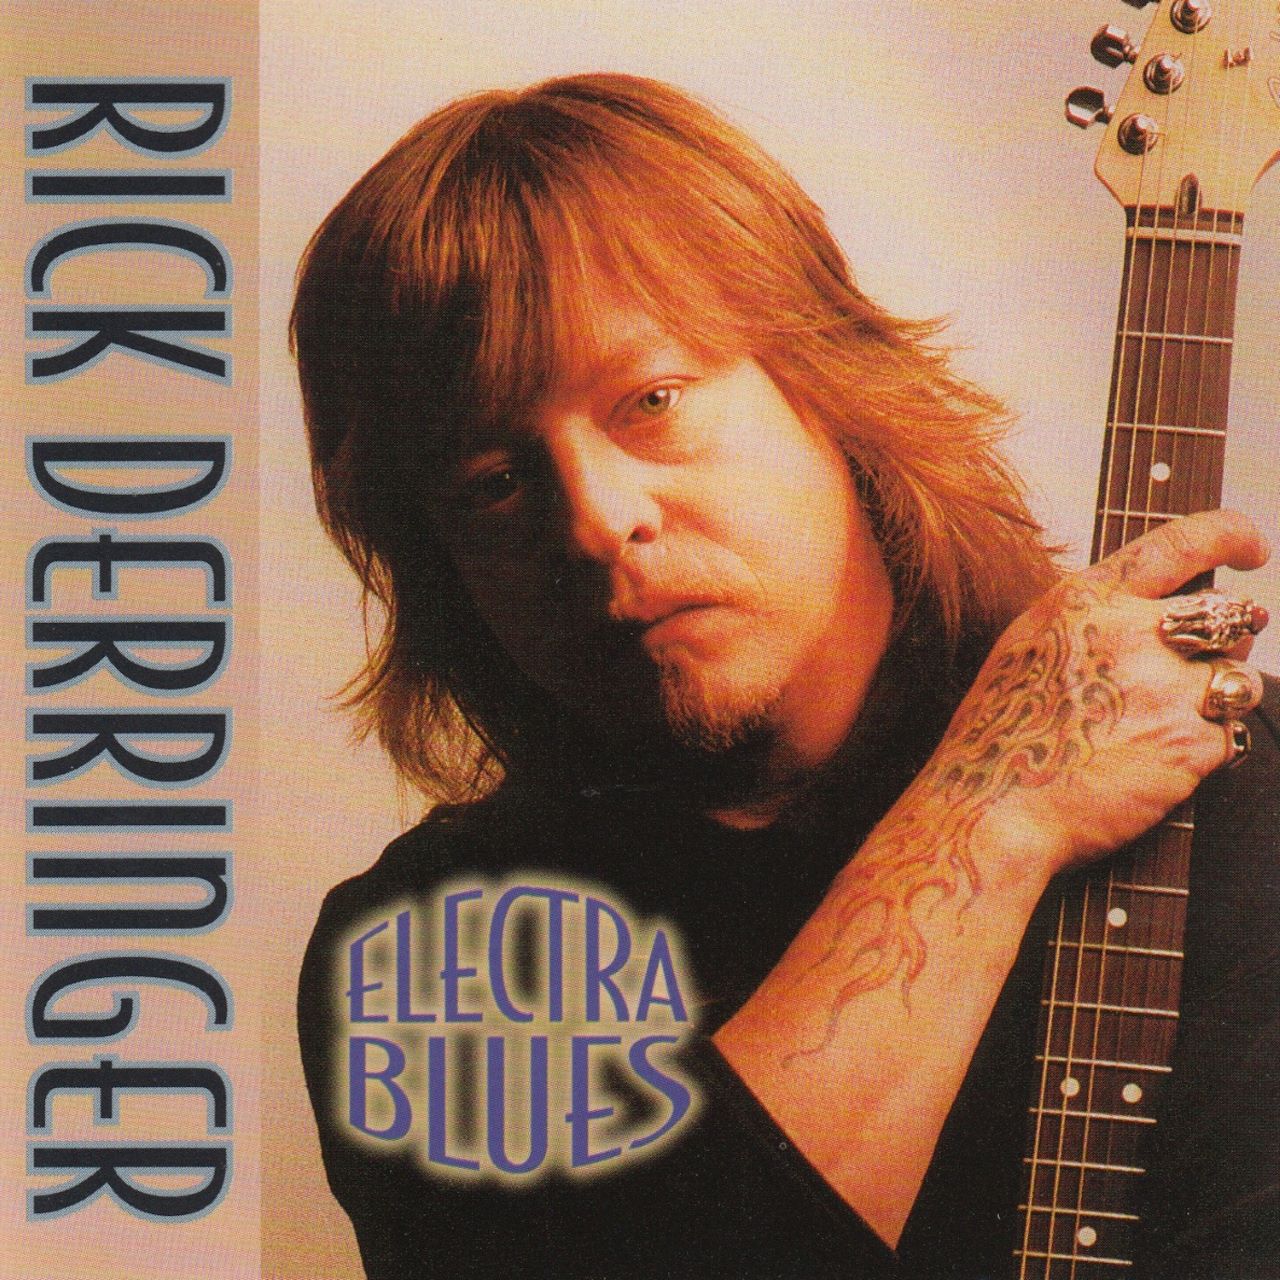 Rick Derringer – Electra Blues cover album